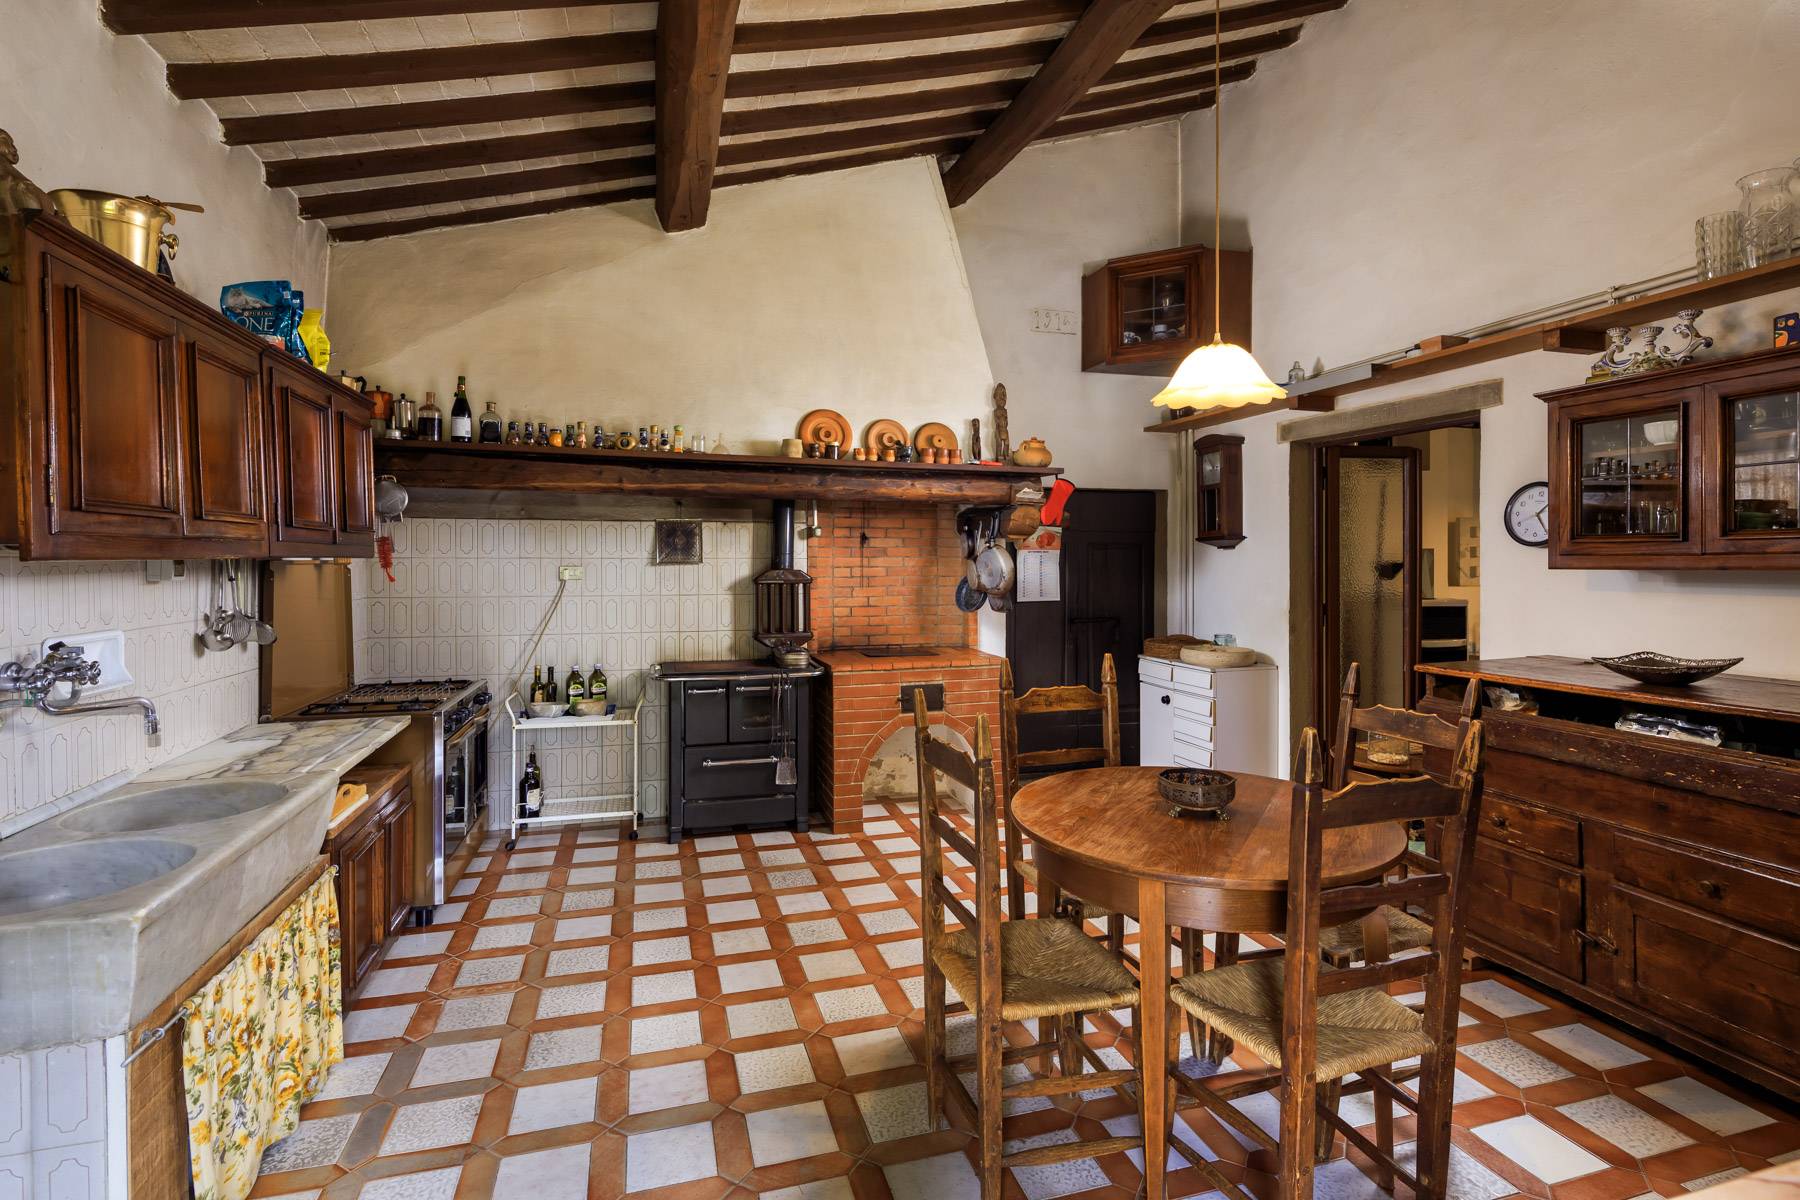 Casa indipendente in Vendita a Fiesole: 5 locali, 340 mq - Foto 13